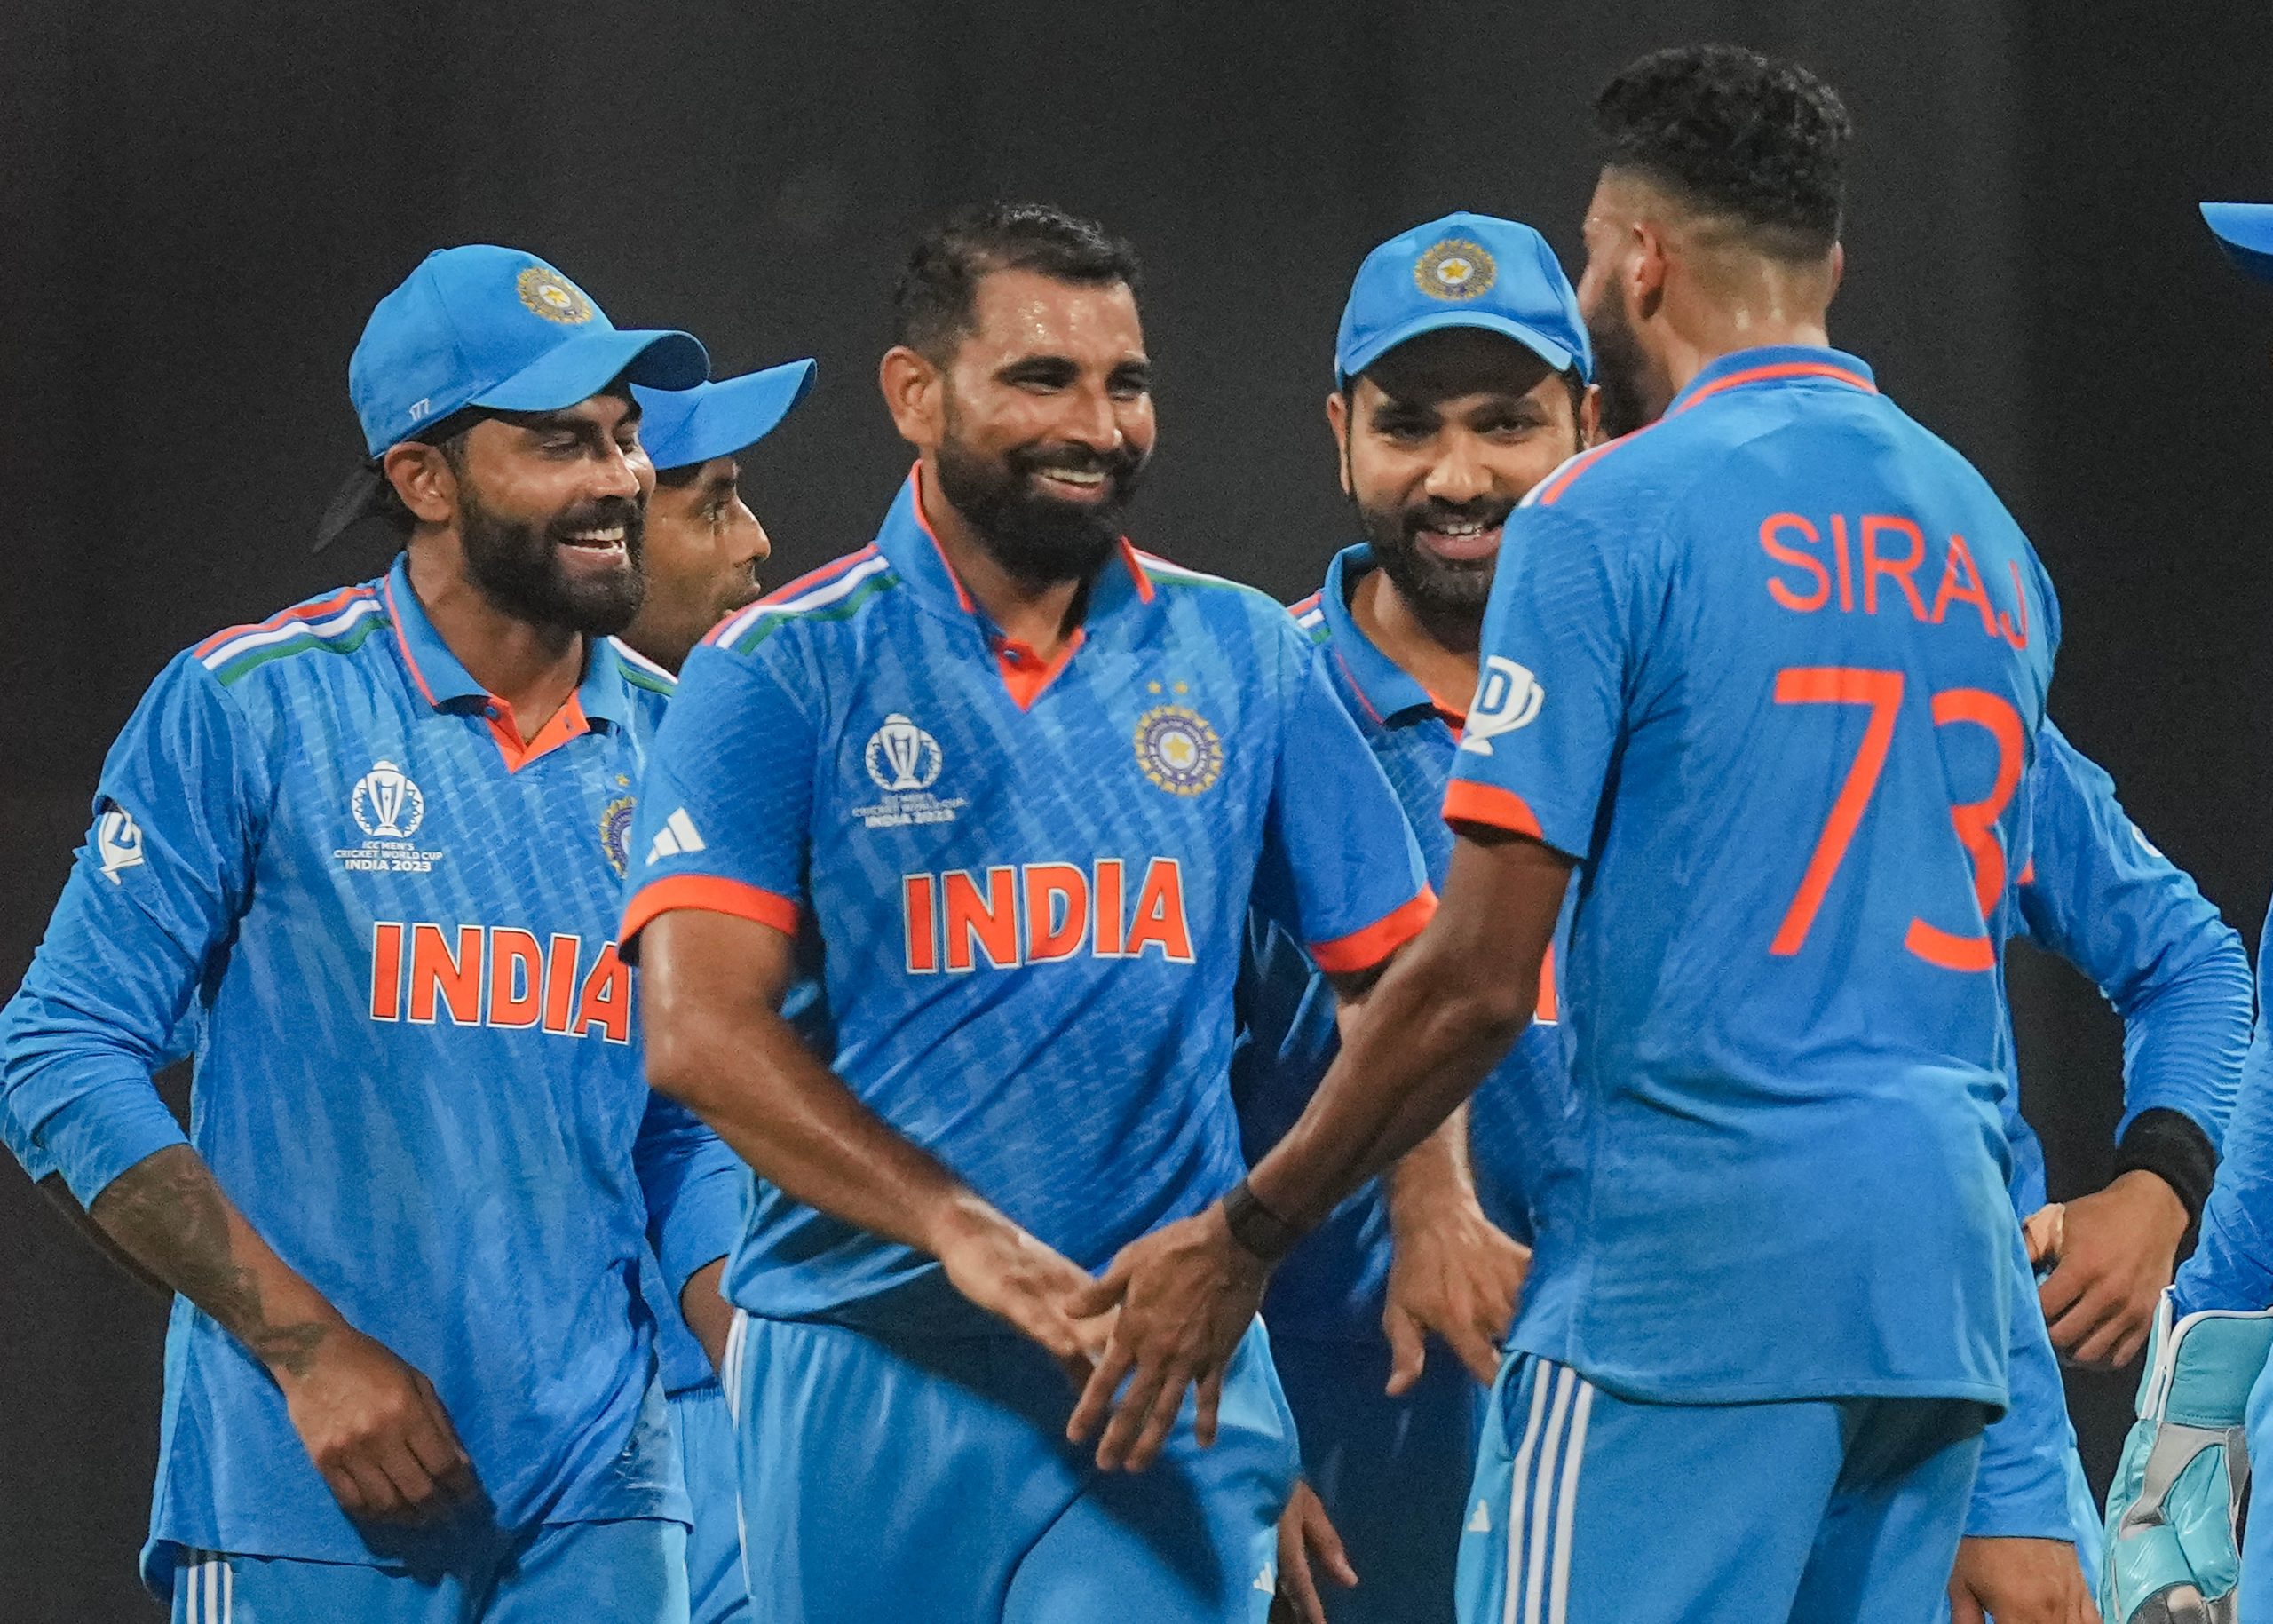 वर्ल्ड कप फाइनल में भारत की जीत पक्की! टॉस हारना टीम इंडिया के लिए शुभ संकेत| Hindi News